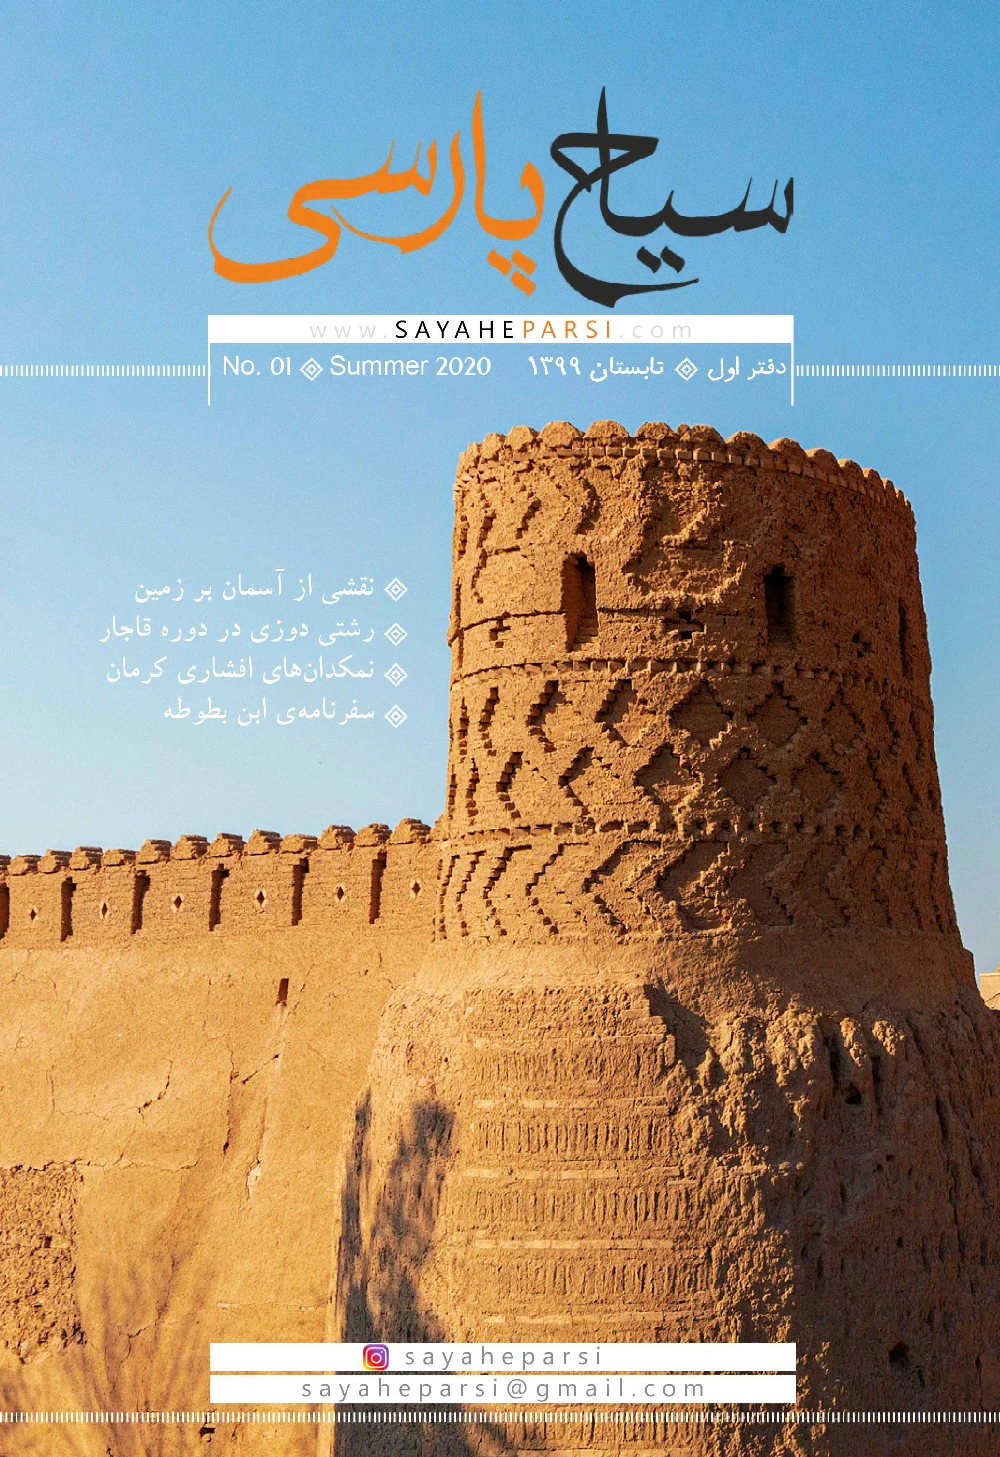 سیاح پارسی - شماره 1 - تابستان 1399